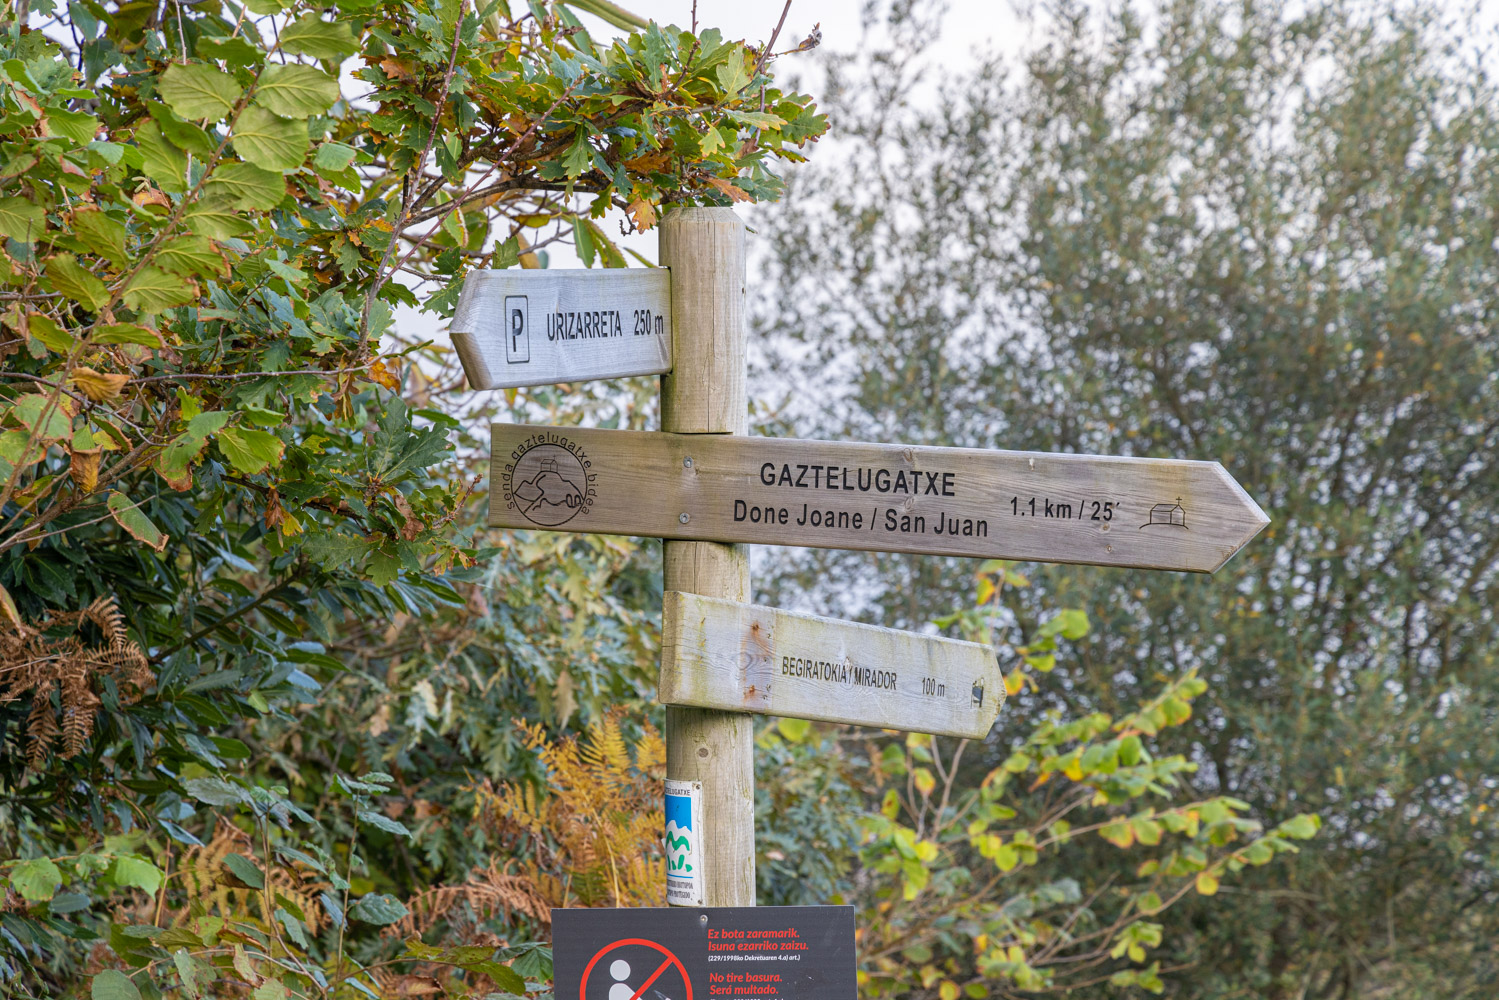 Skylt i trä som visar vägen till Gaztelugatxe (1,1 km), en utsiktsplats (100 meter) och parkering (250 meter).